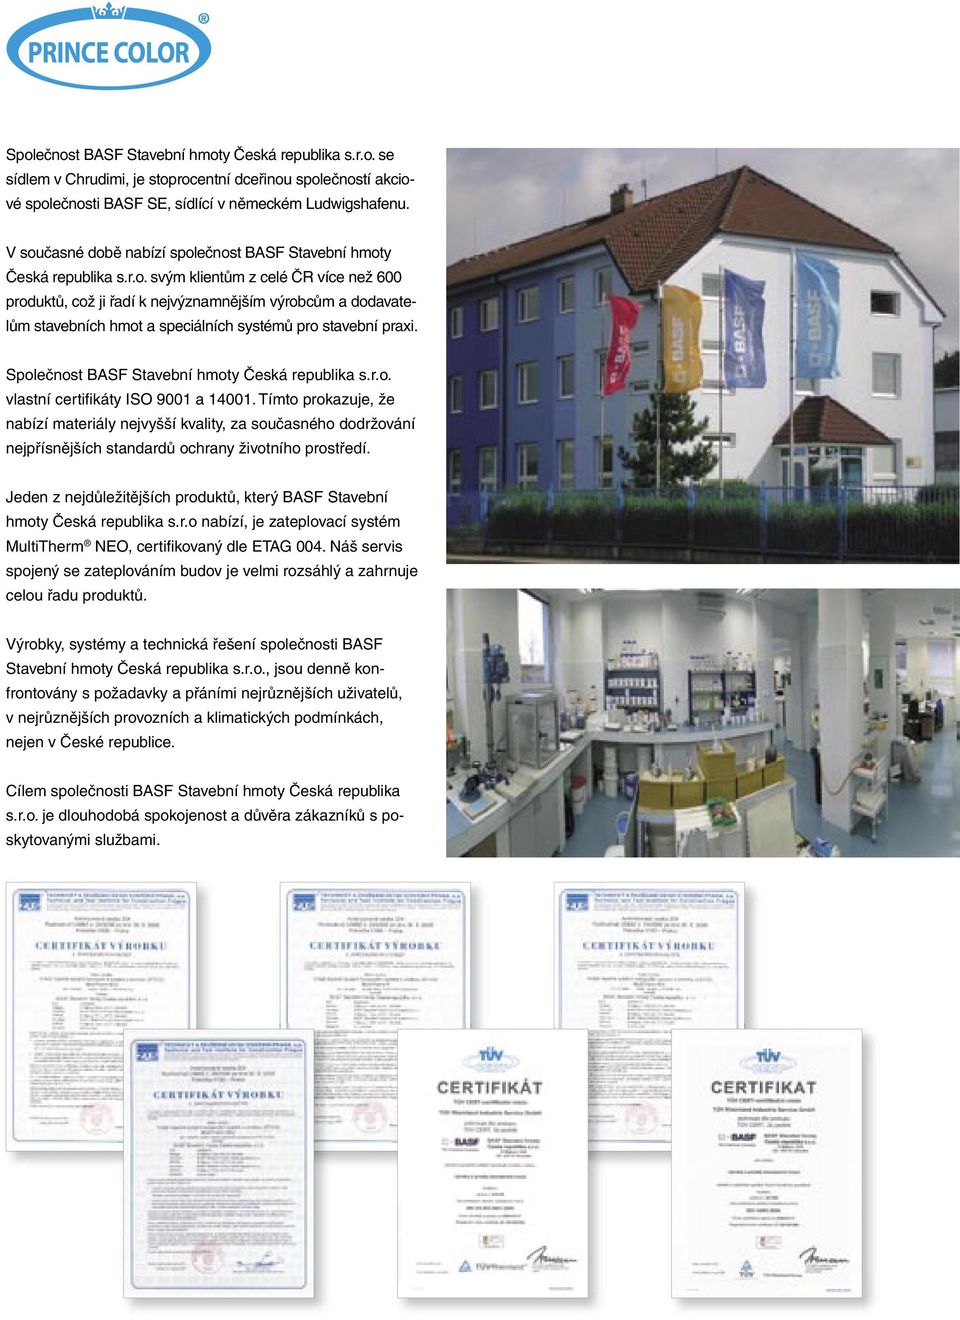 Společnost BASF Stavební hmoty Česká republika s.r.o. vlastní certifi káty ISO 9001 a 14001.